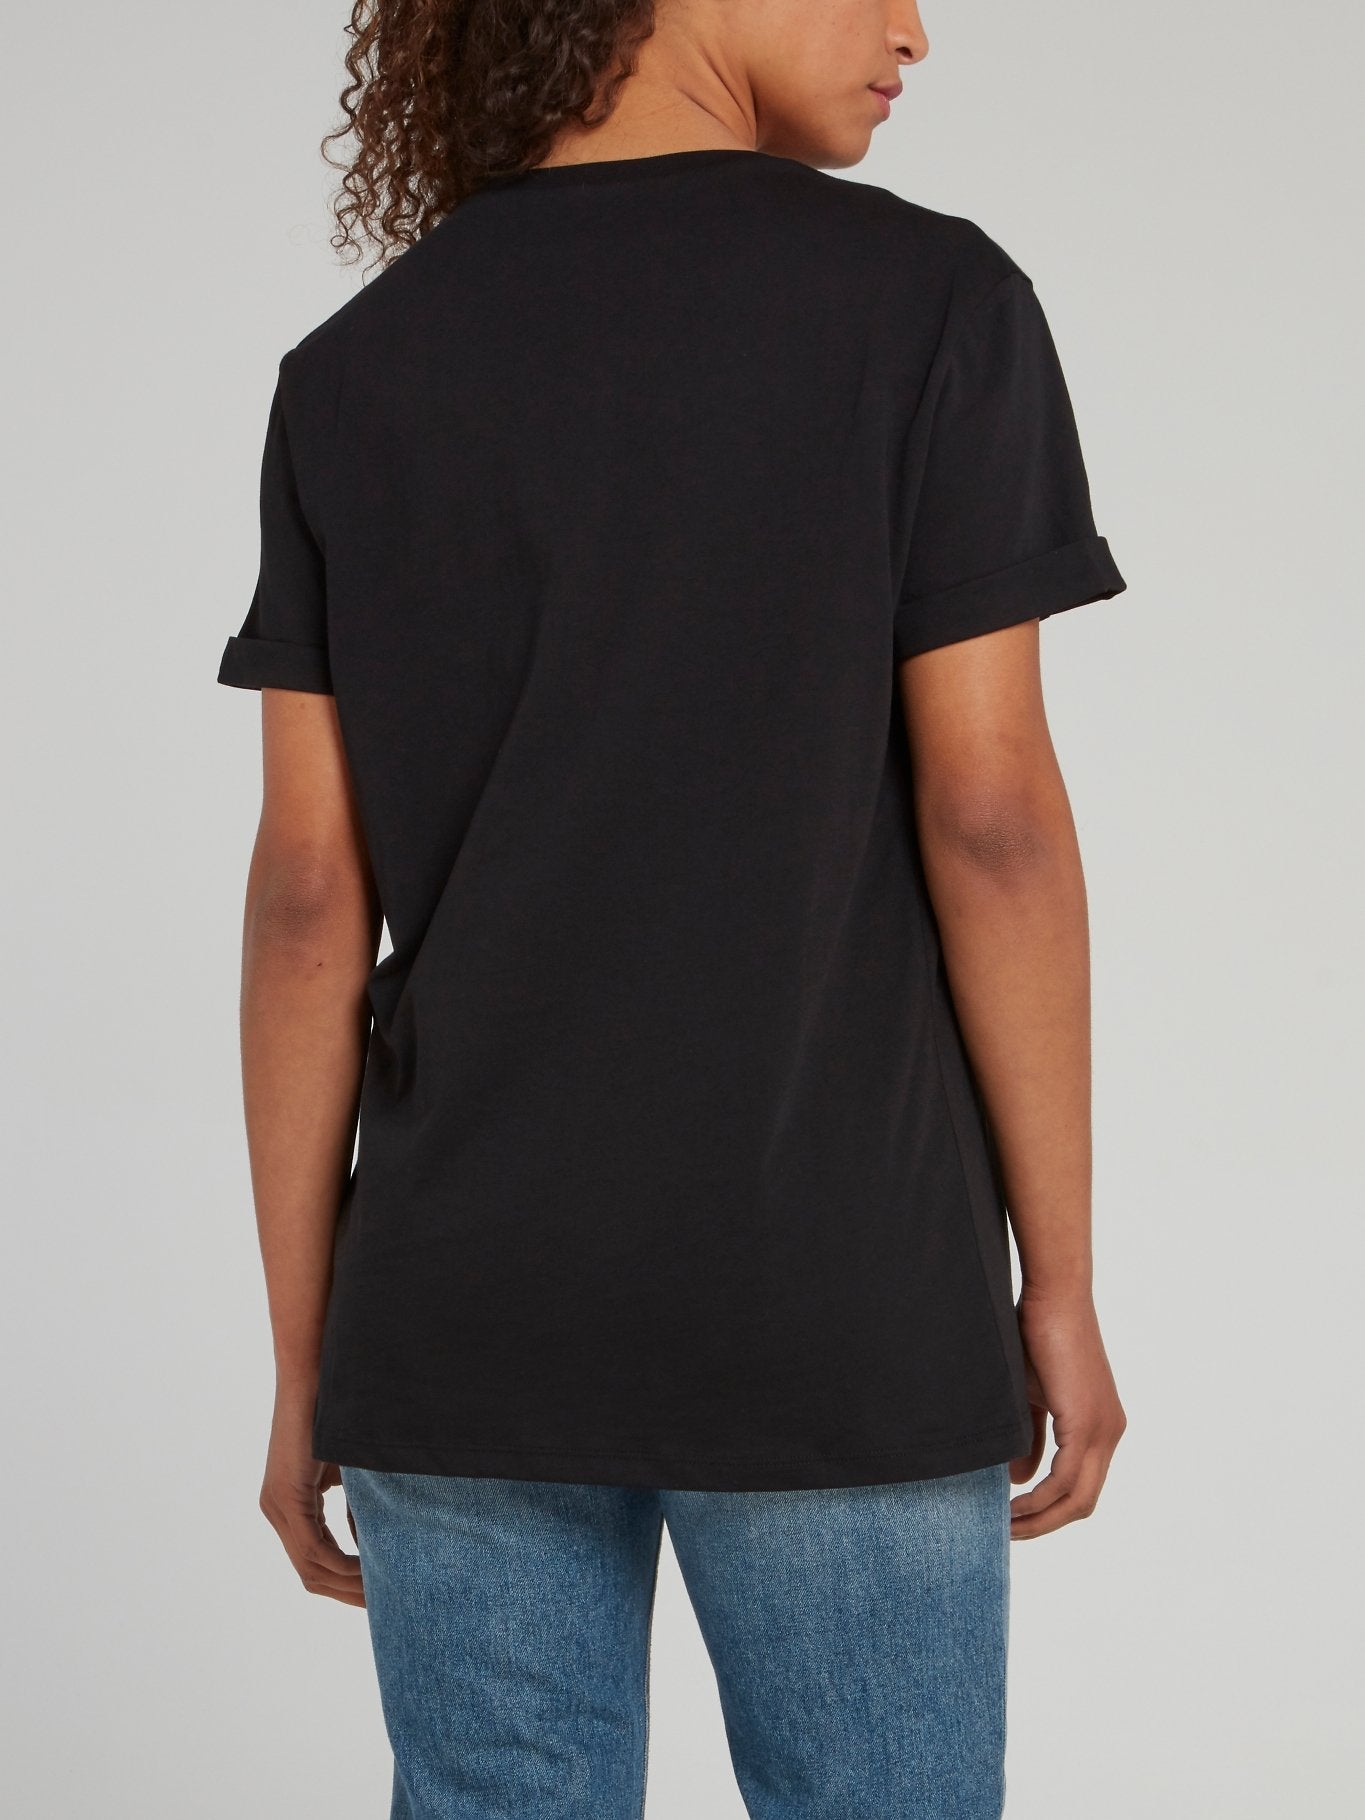 Black Sequin Snake T-Shirt